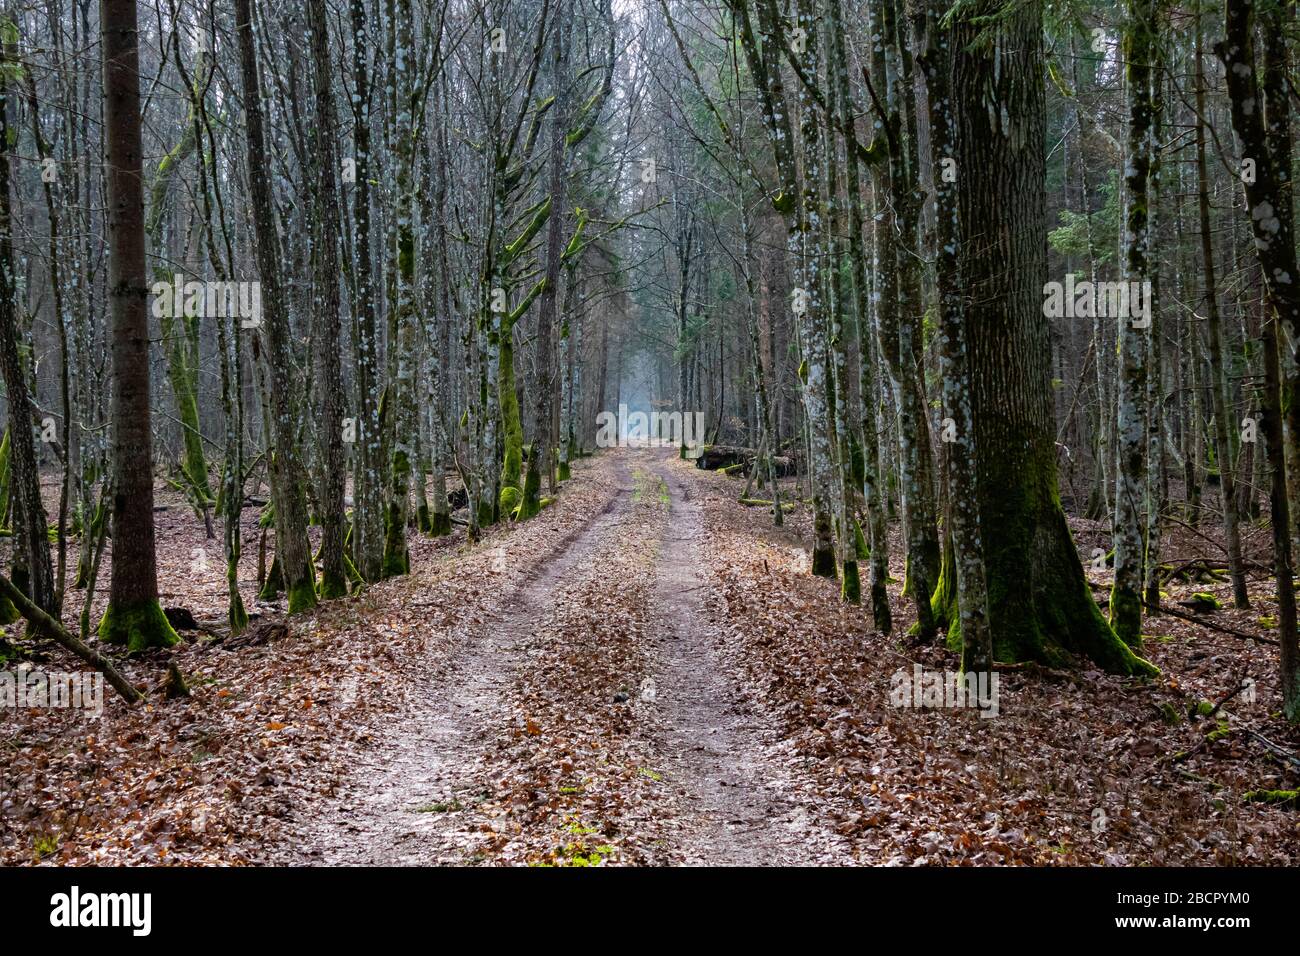 un percorso attraverso un viale di alberi in una foresta profonda, luce alla fine del tunnel di alberi che dà speranza per l'umore depressivo Foto Stock